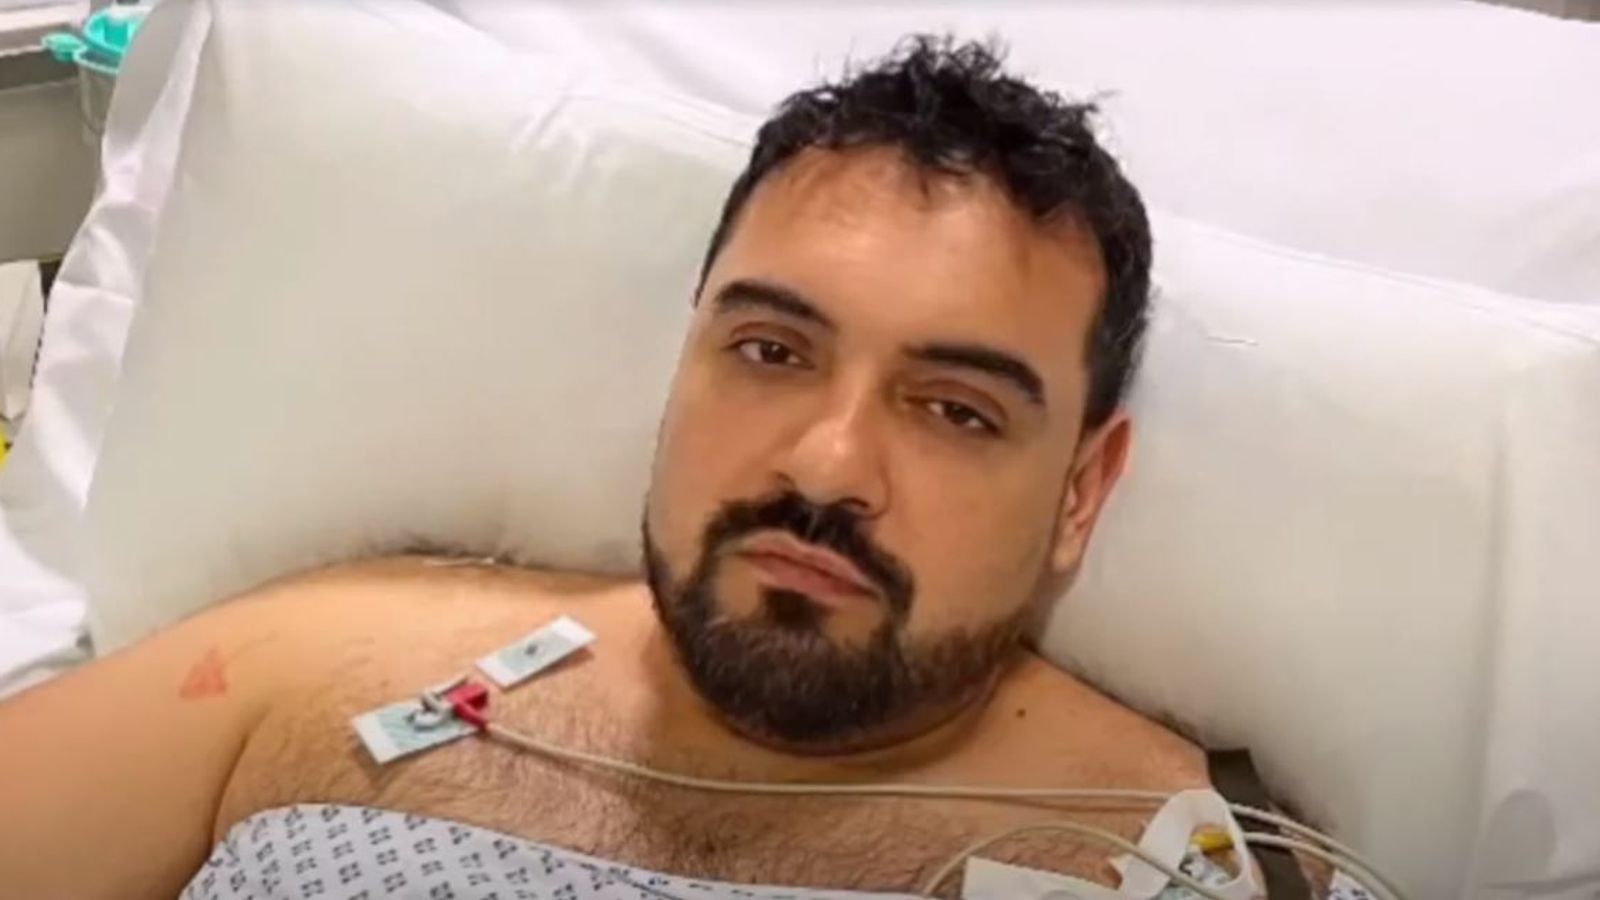 Attaque à l’épée du Hainaut : un homme blessé au couteau remercie le NHS de lui avoir sauvé la vie |  Nouvelles du Royaume-Uni